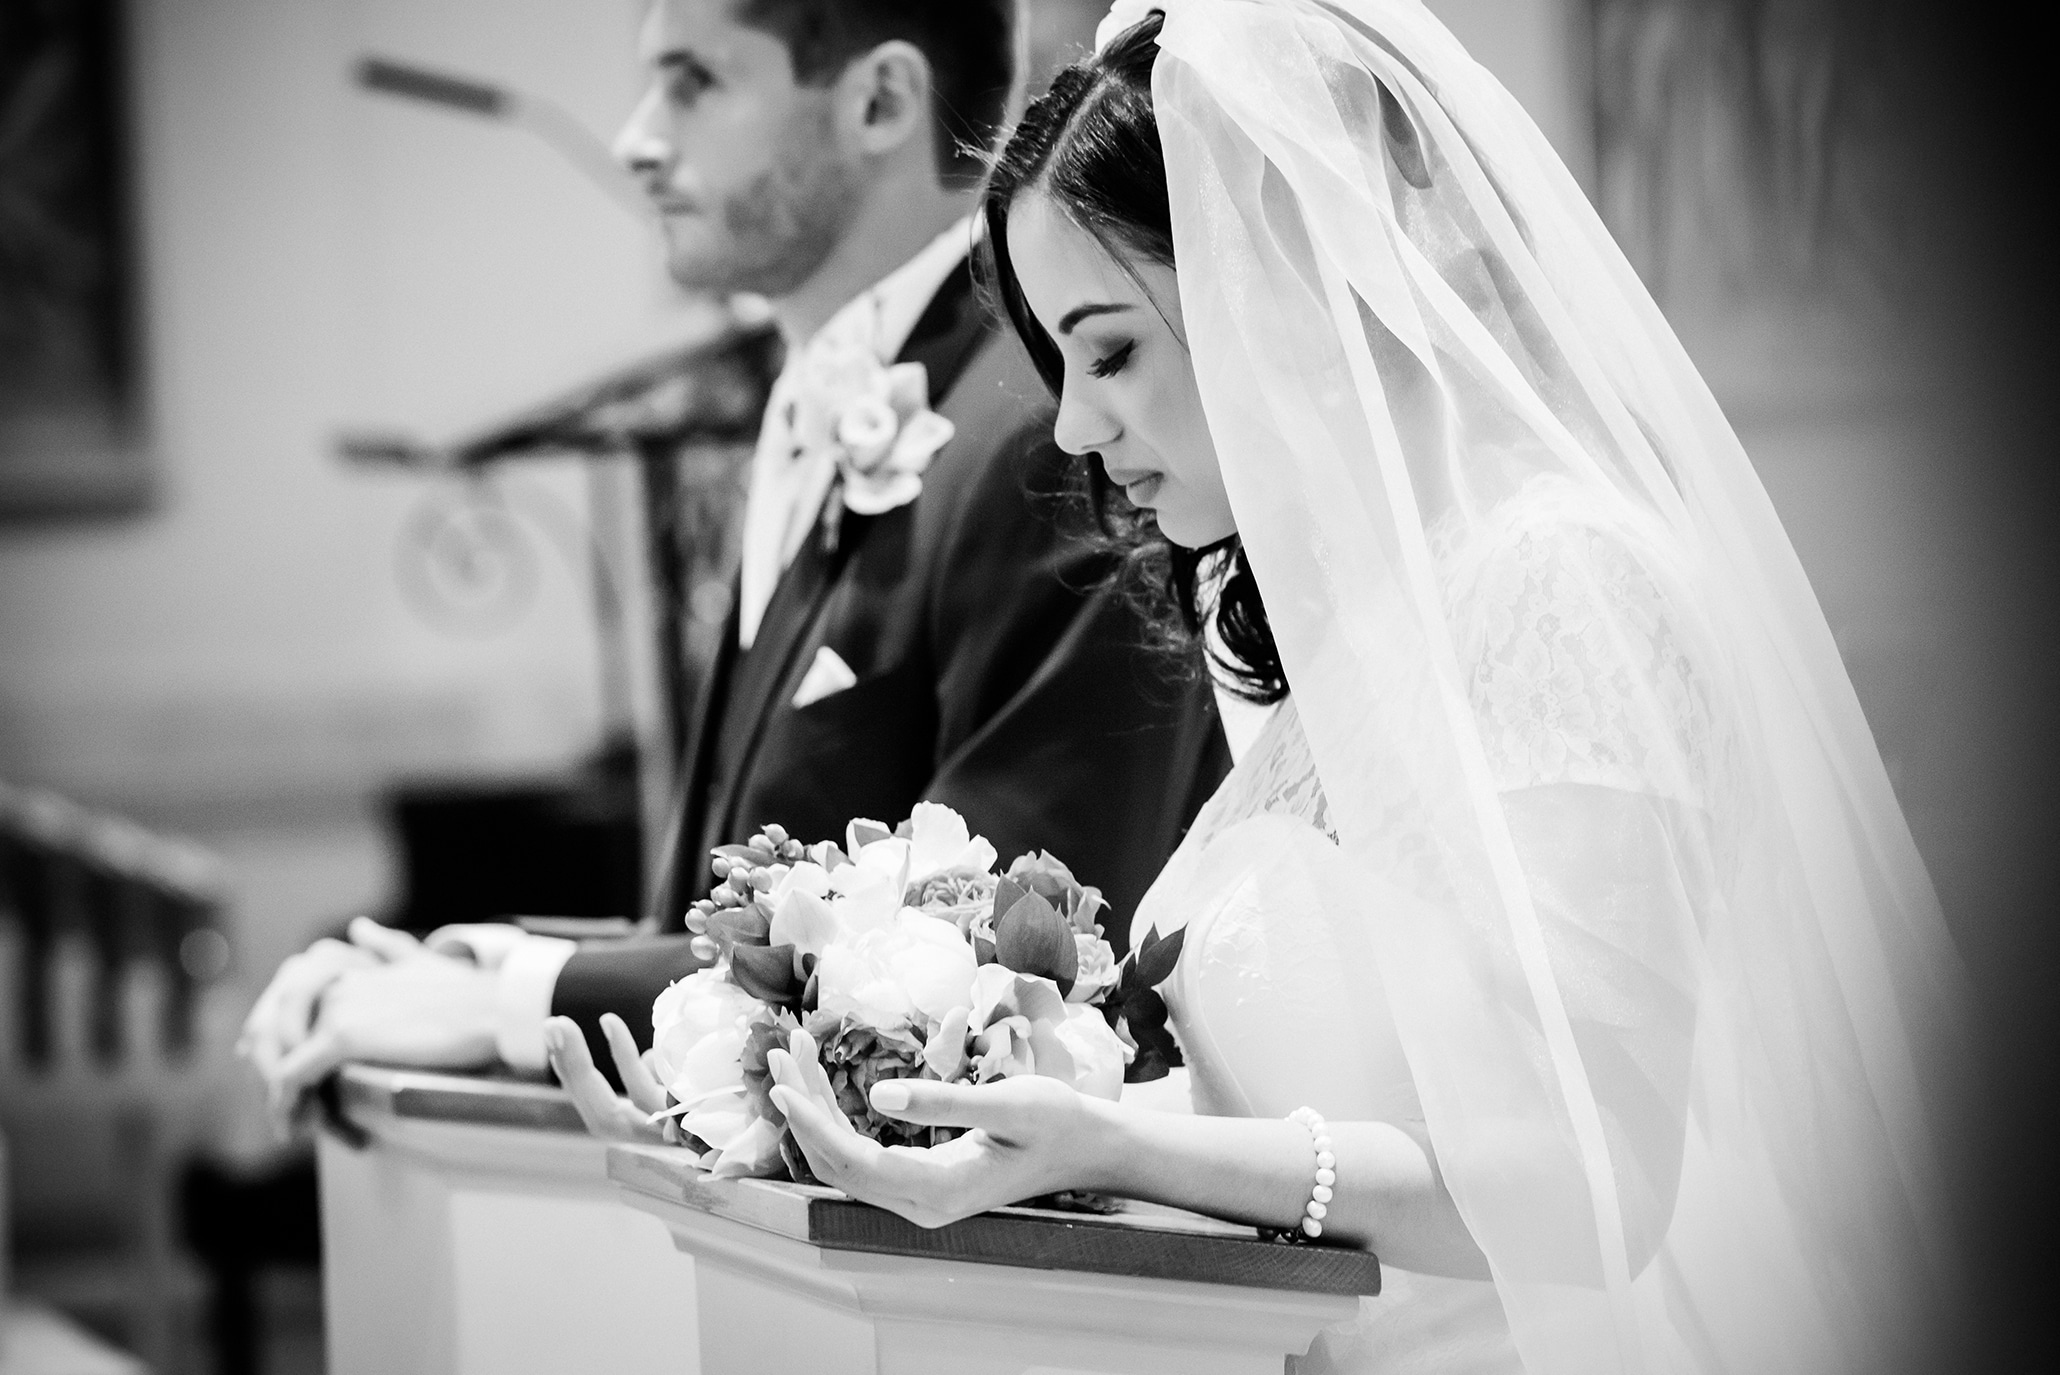 Can a Catholic go to a secular wedding?